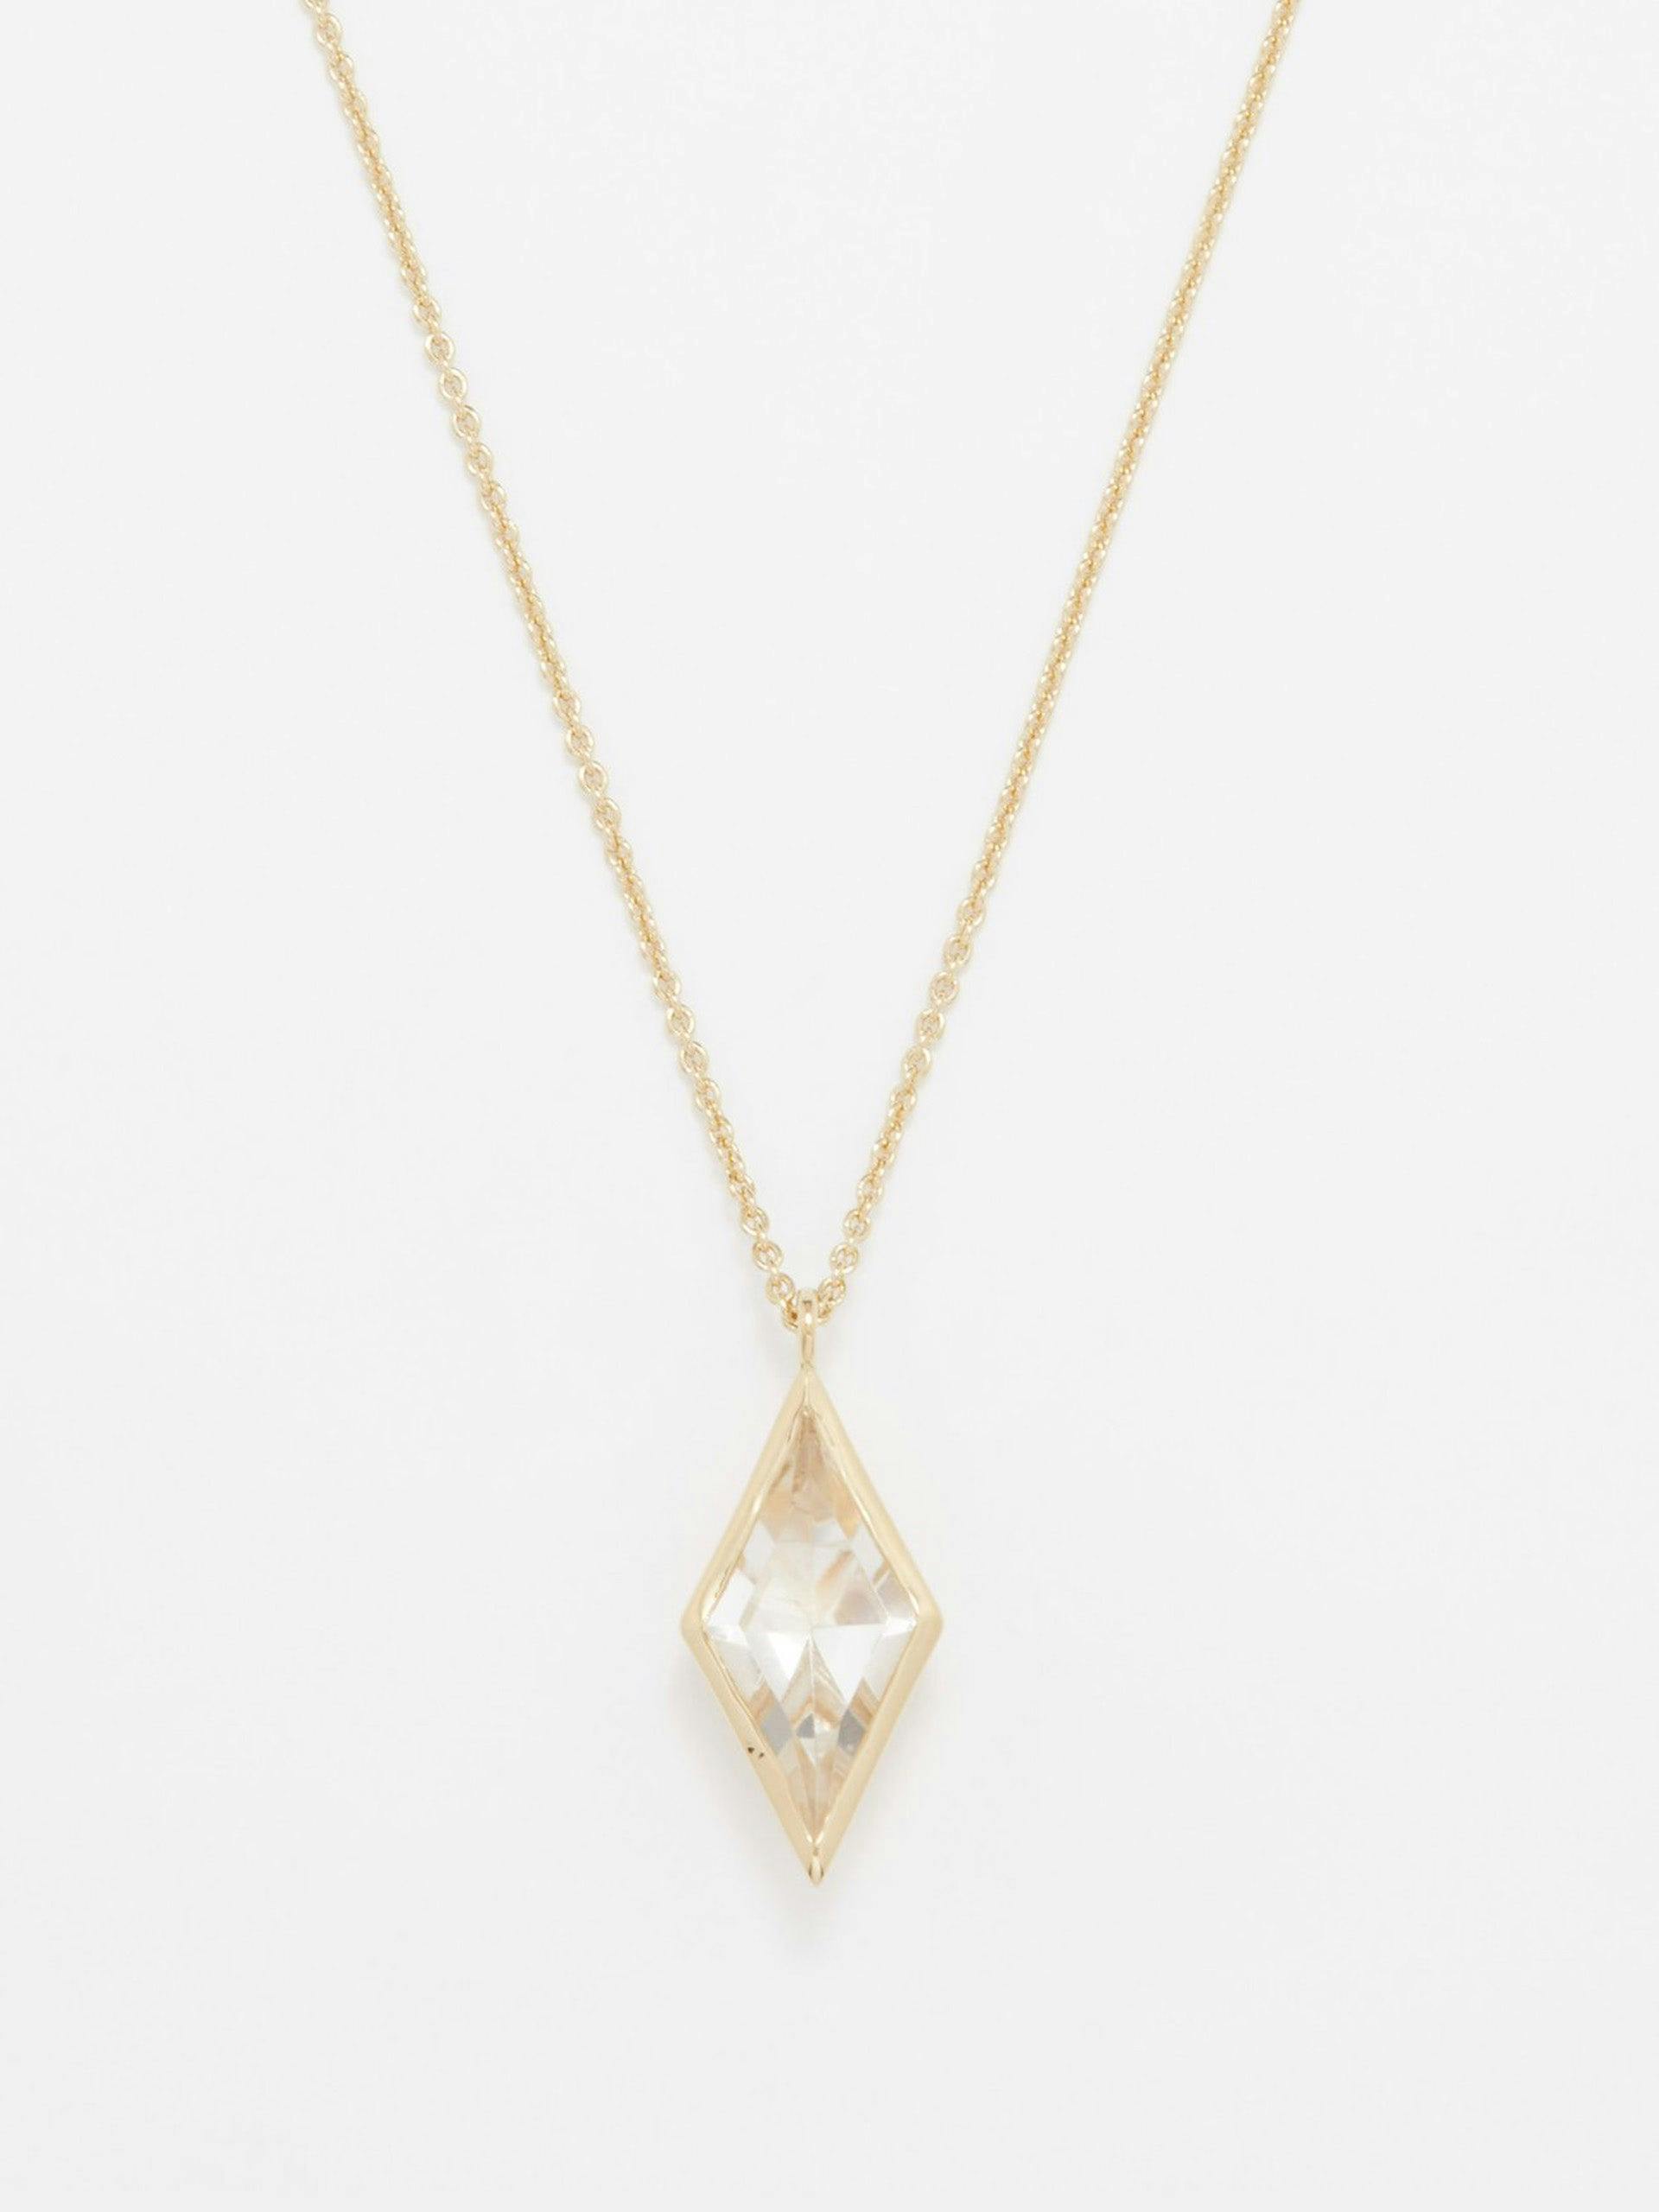 Gold kite vermeil necklace